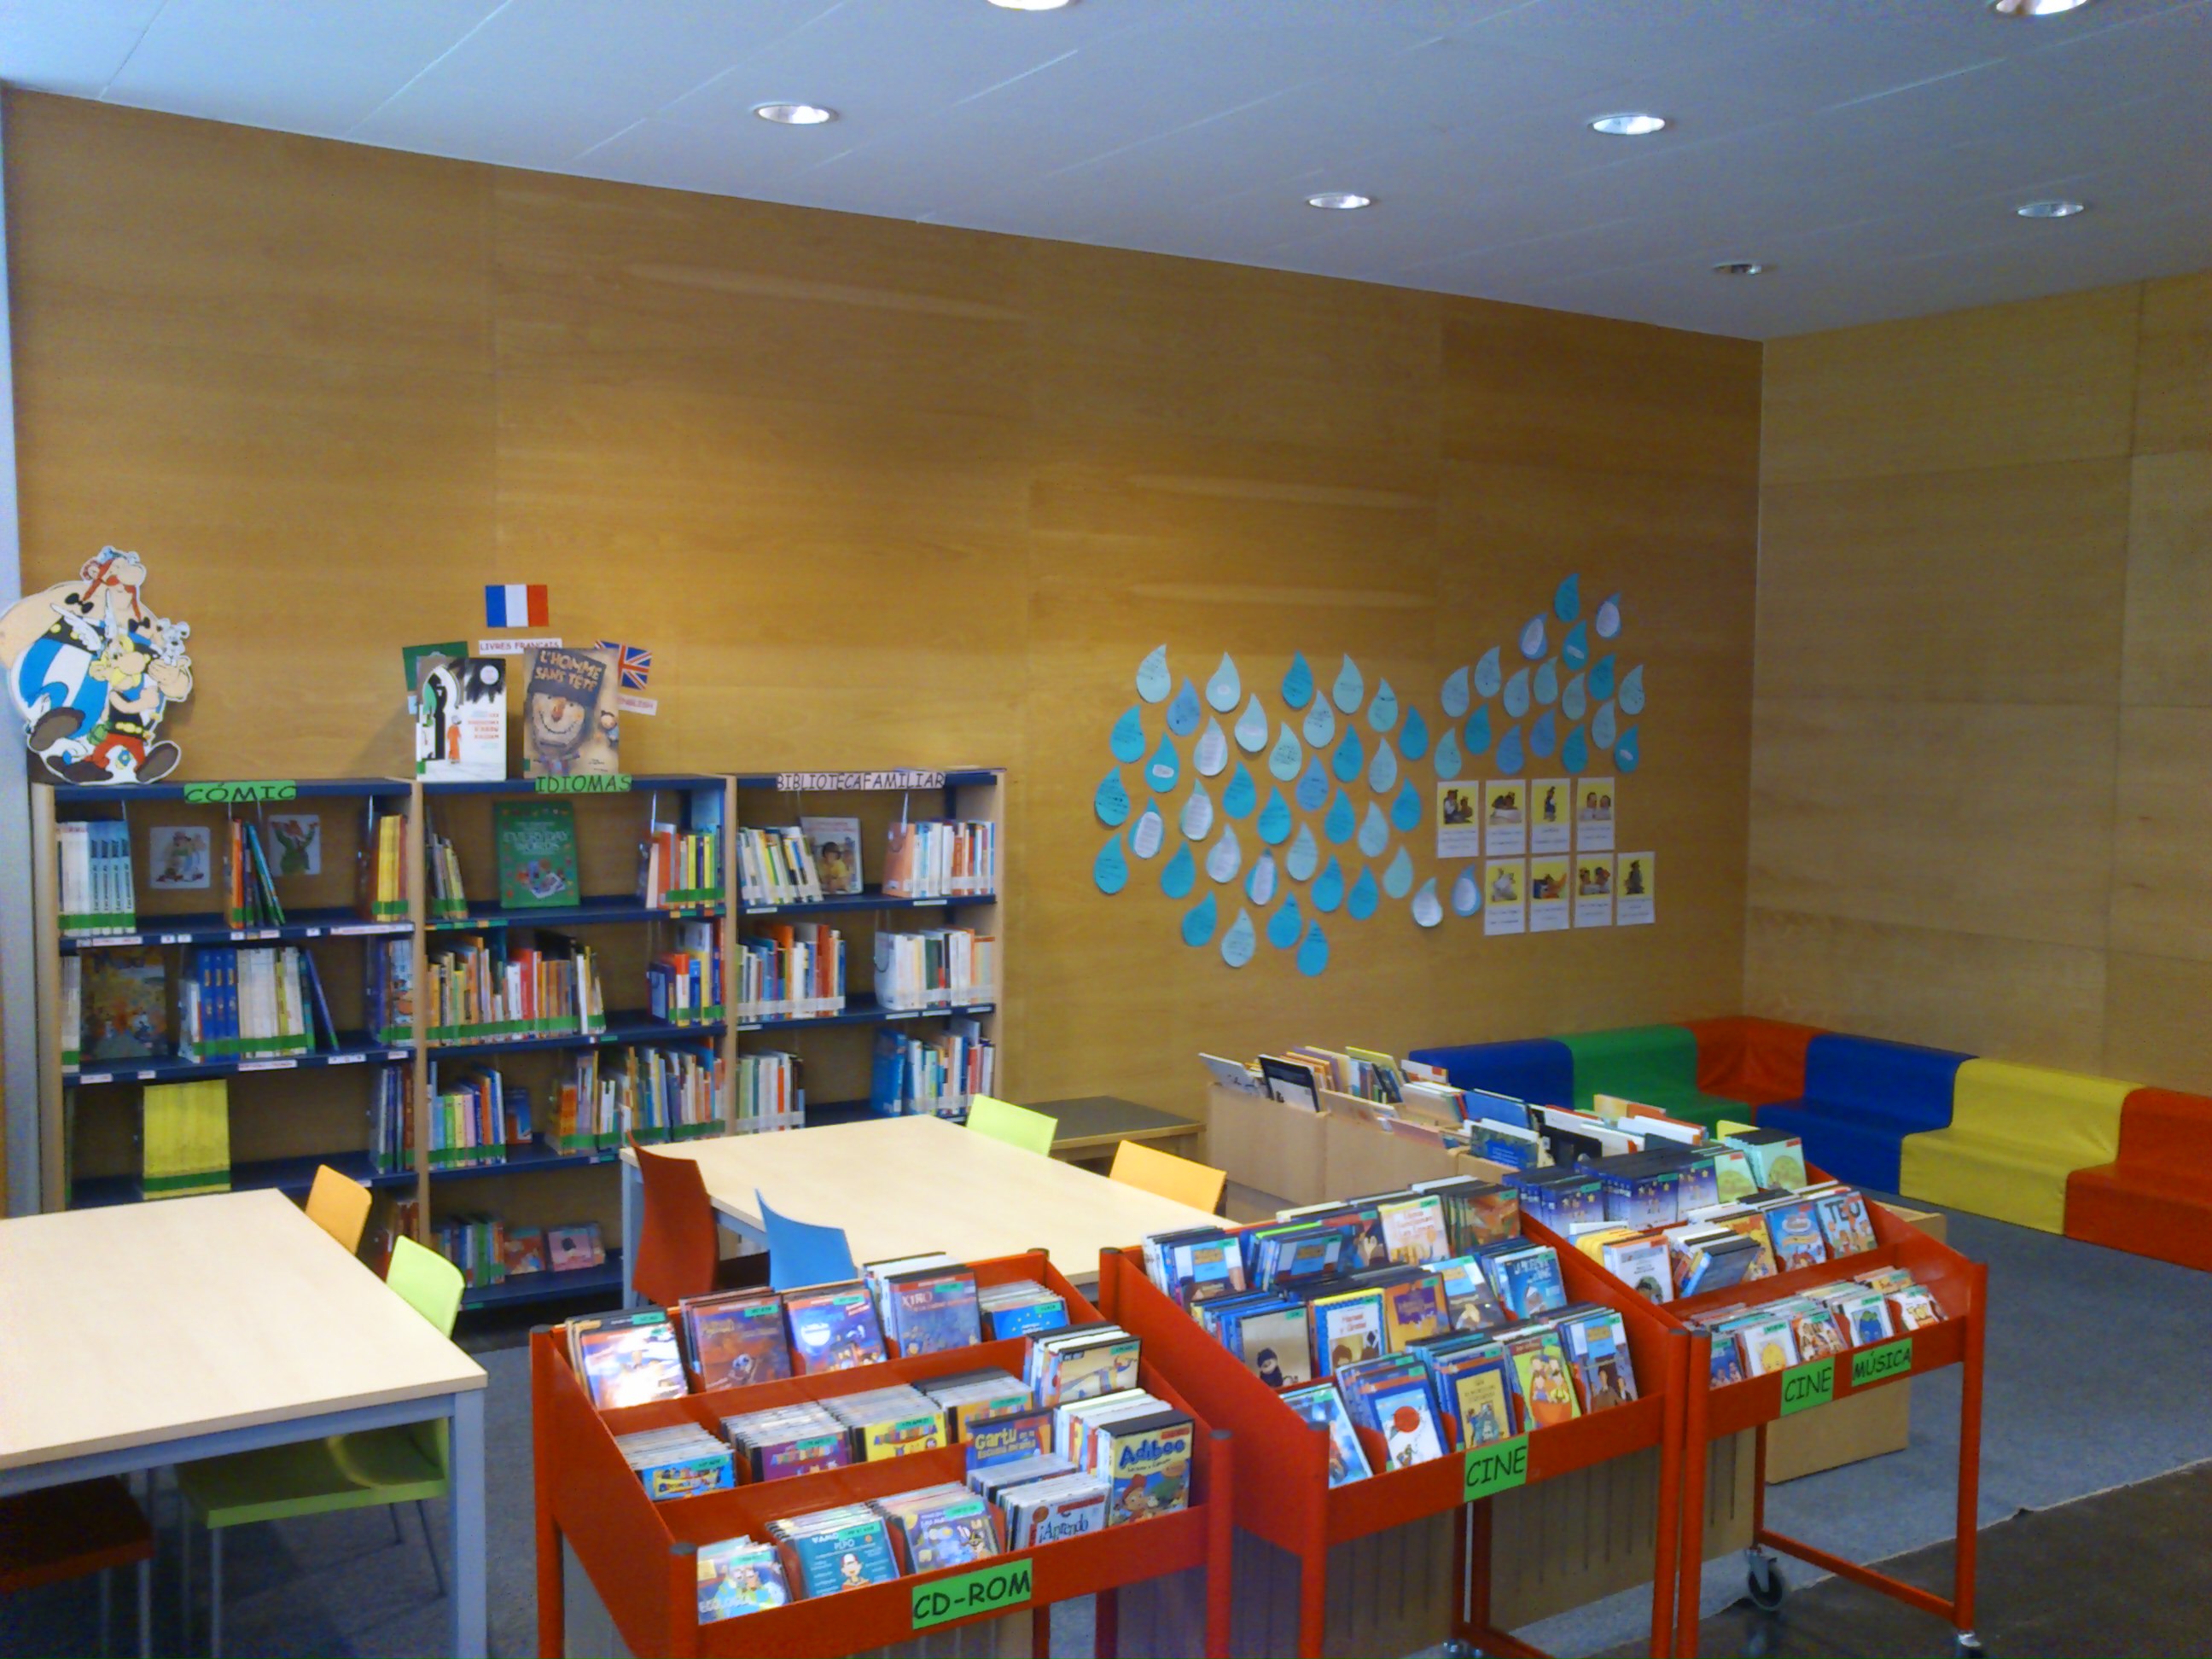 Ramón J. Sender Library